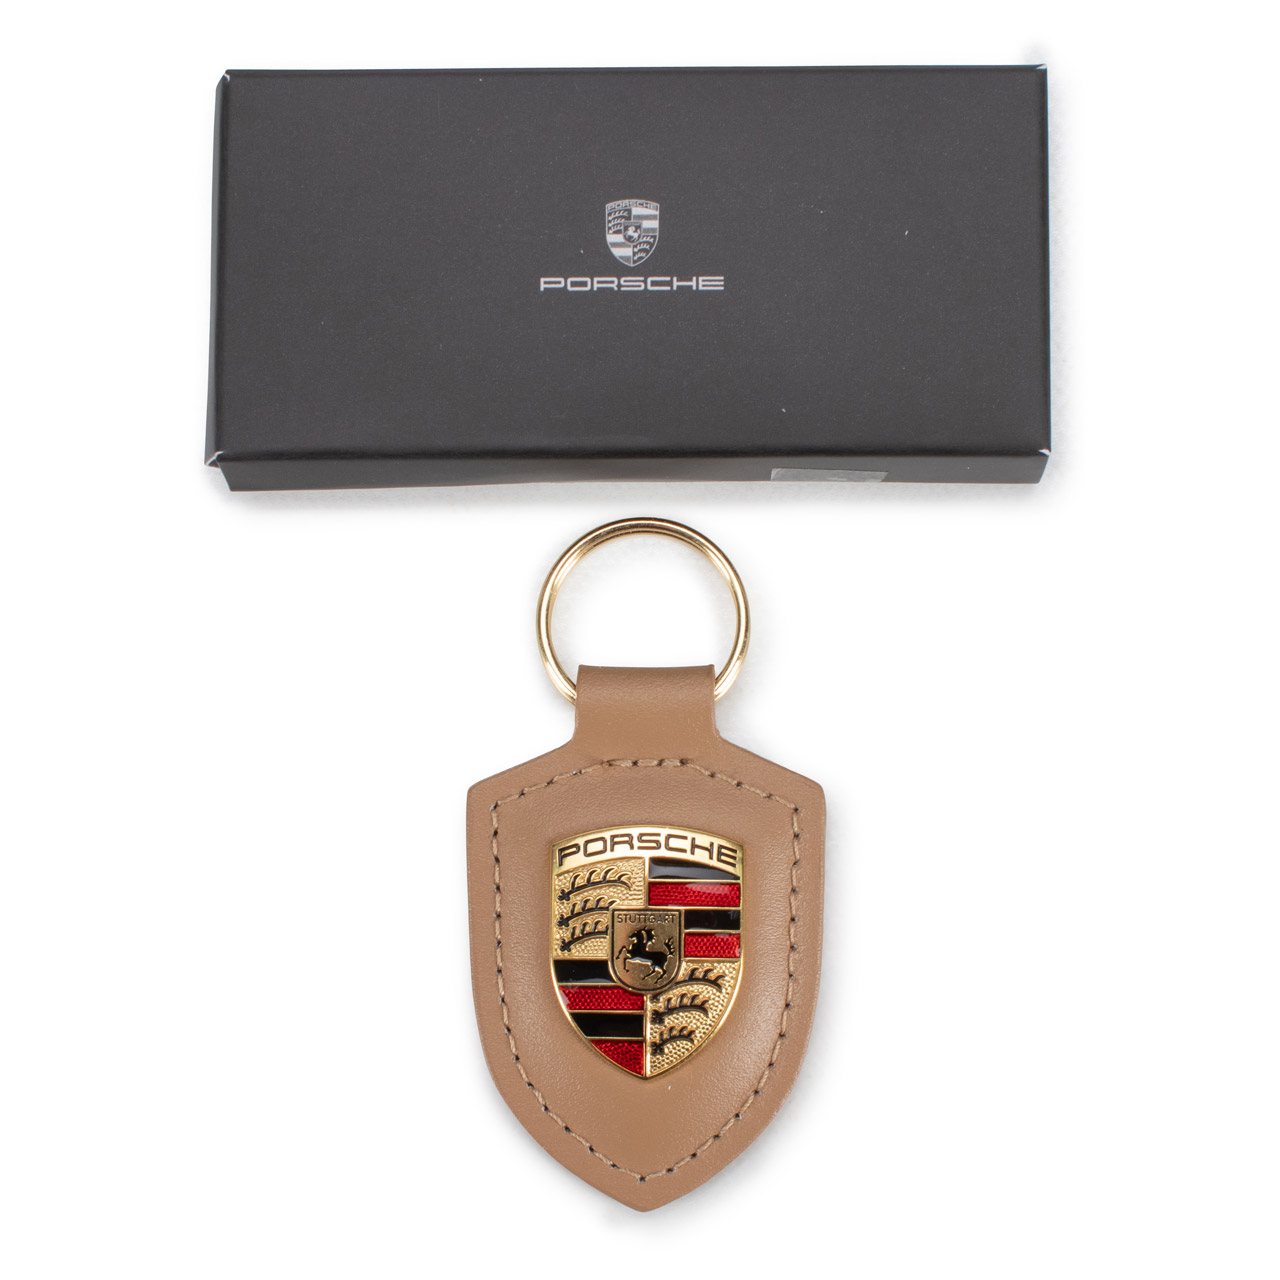 ORIGINAL Porsche Schlüsselanhänger BEIGE/BRAUN Leder mit Wappen WAP0500980H